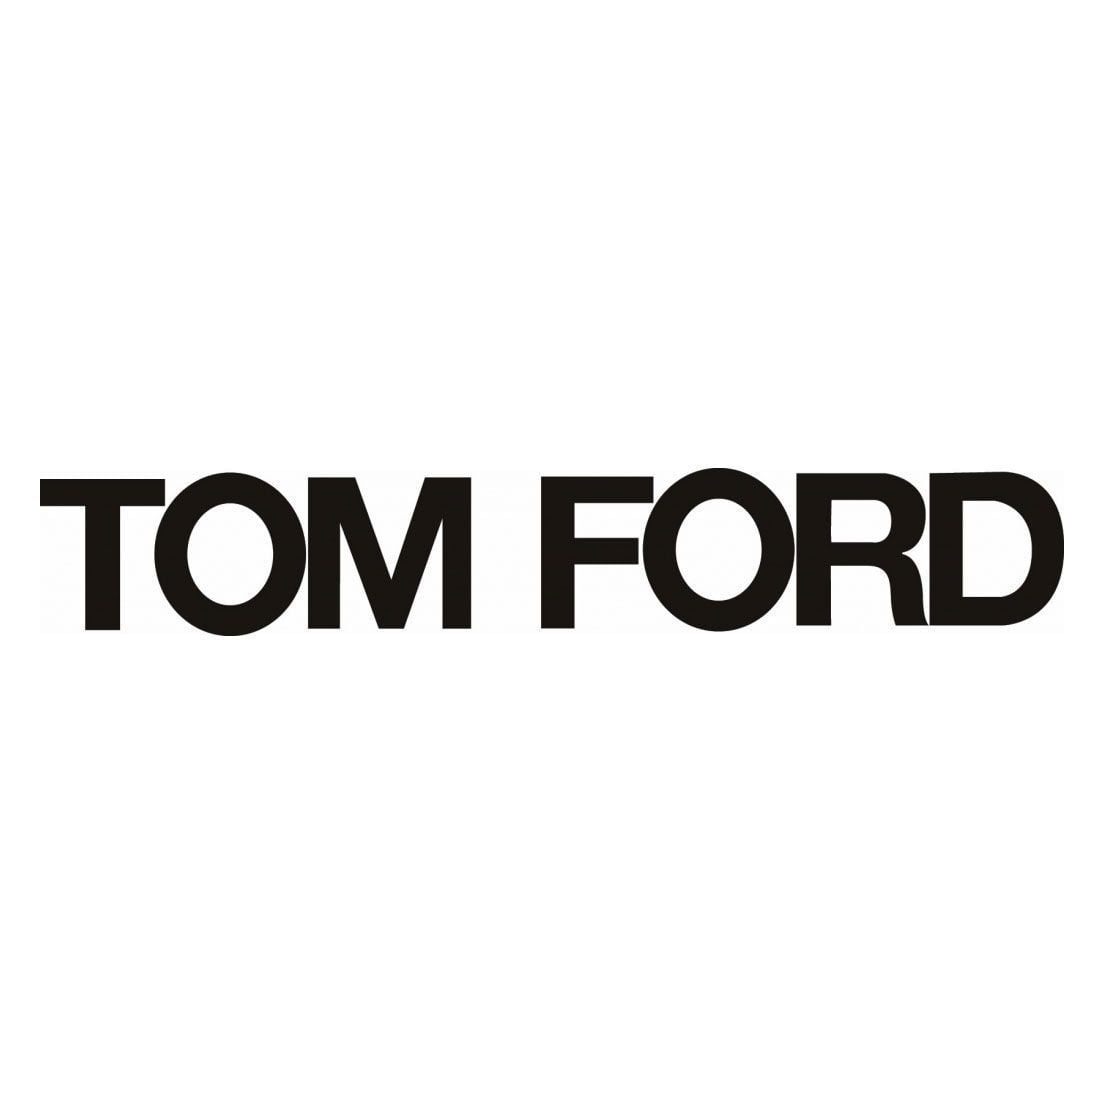 Tom Ford: một bản chất rất Mỹ trong đẳng cấp may đo Anh Quốc